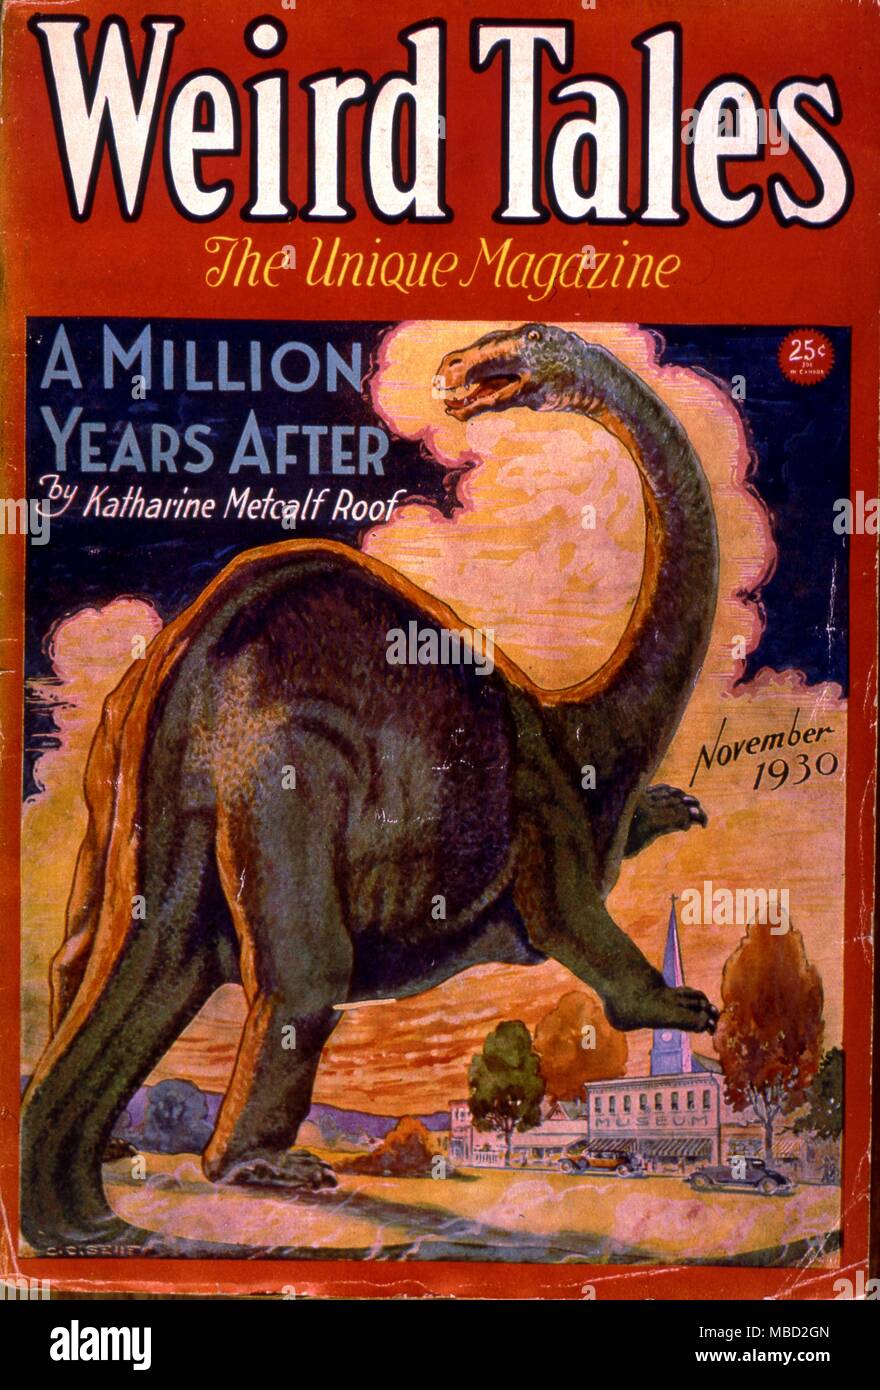 Des monstres. Couvrir de Weird Tales, une bande dessinée de science-fiction américain. Illustration par Senf. 1930 La science-fiction et d'Horreur Magazines Banque D'Images